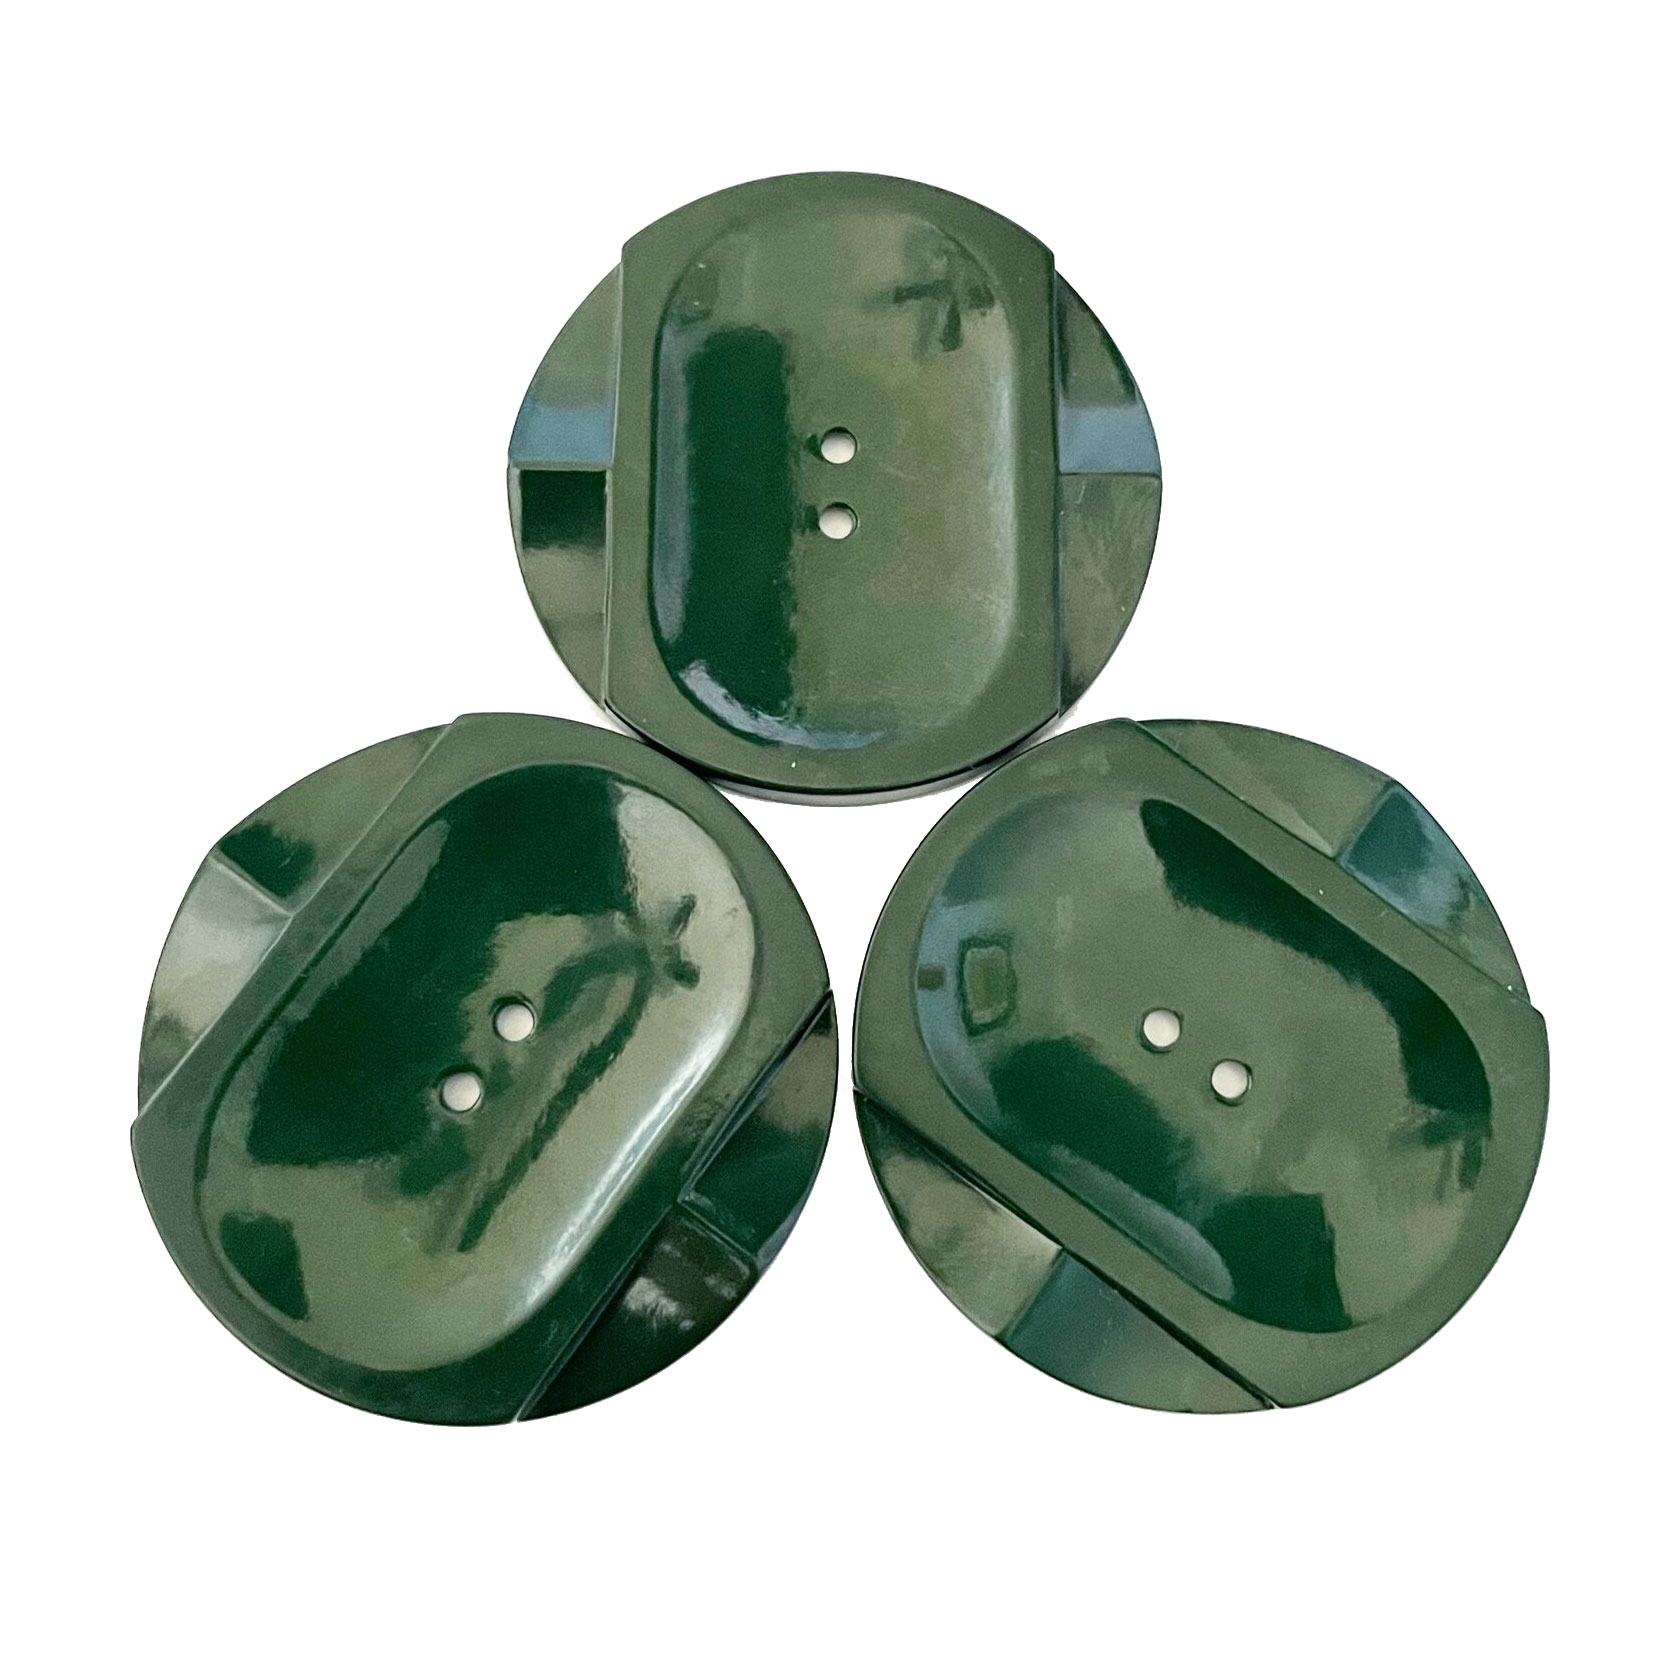 1930s green bakelite coat buttons